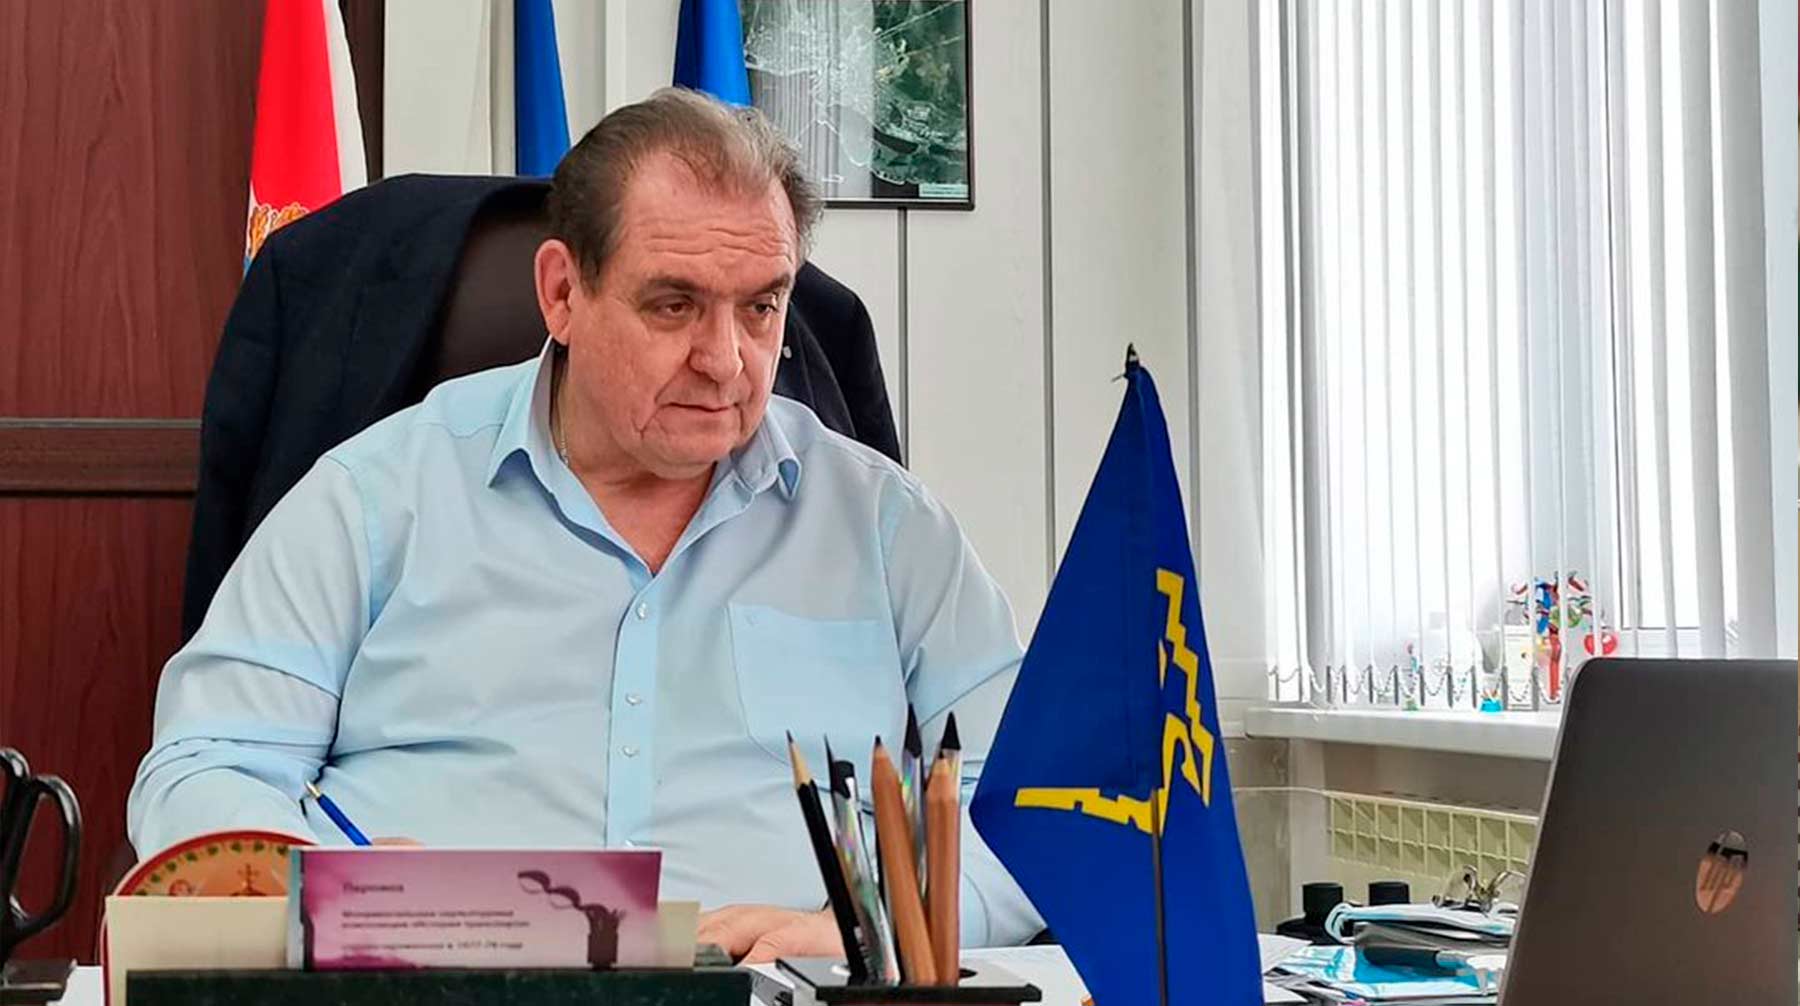 Сергей Анташев не выдержал темп работы, заданный губернатором, отметили в администрации региона Сергей Анташев